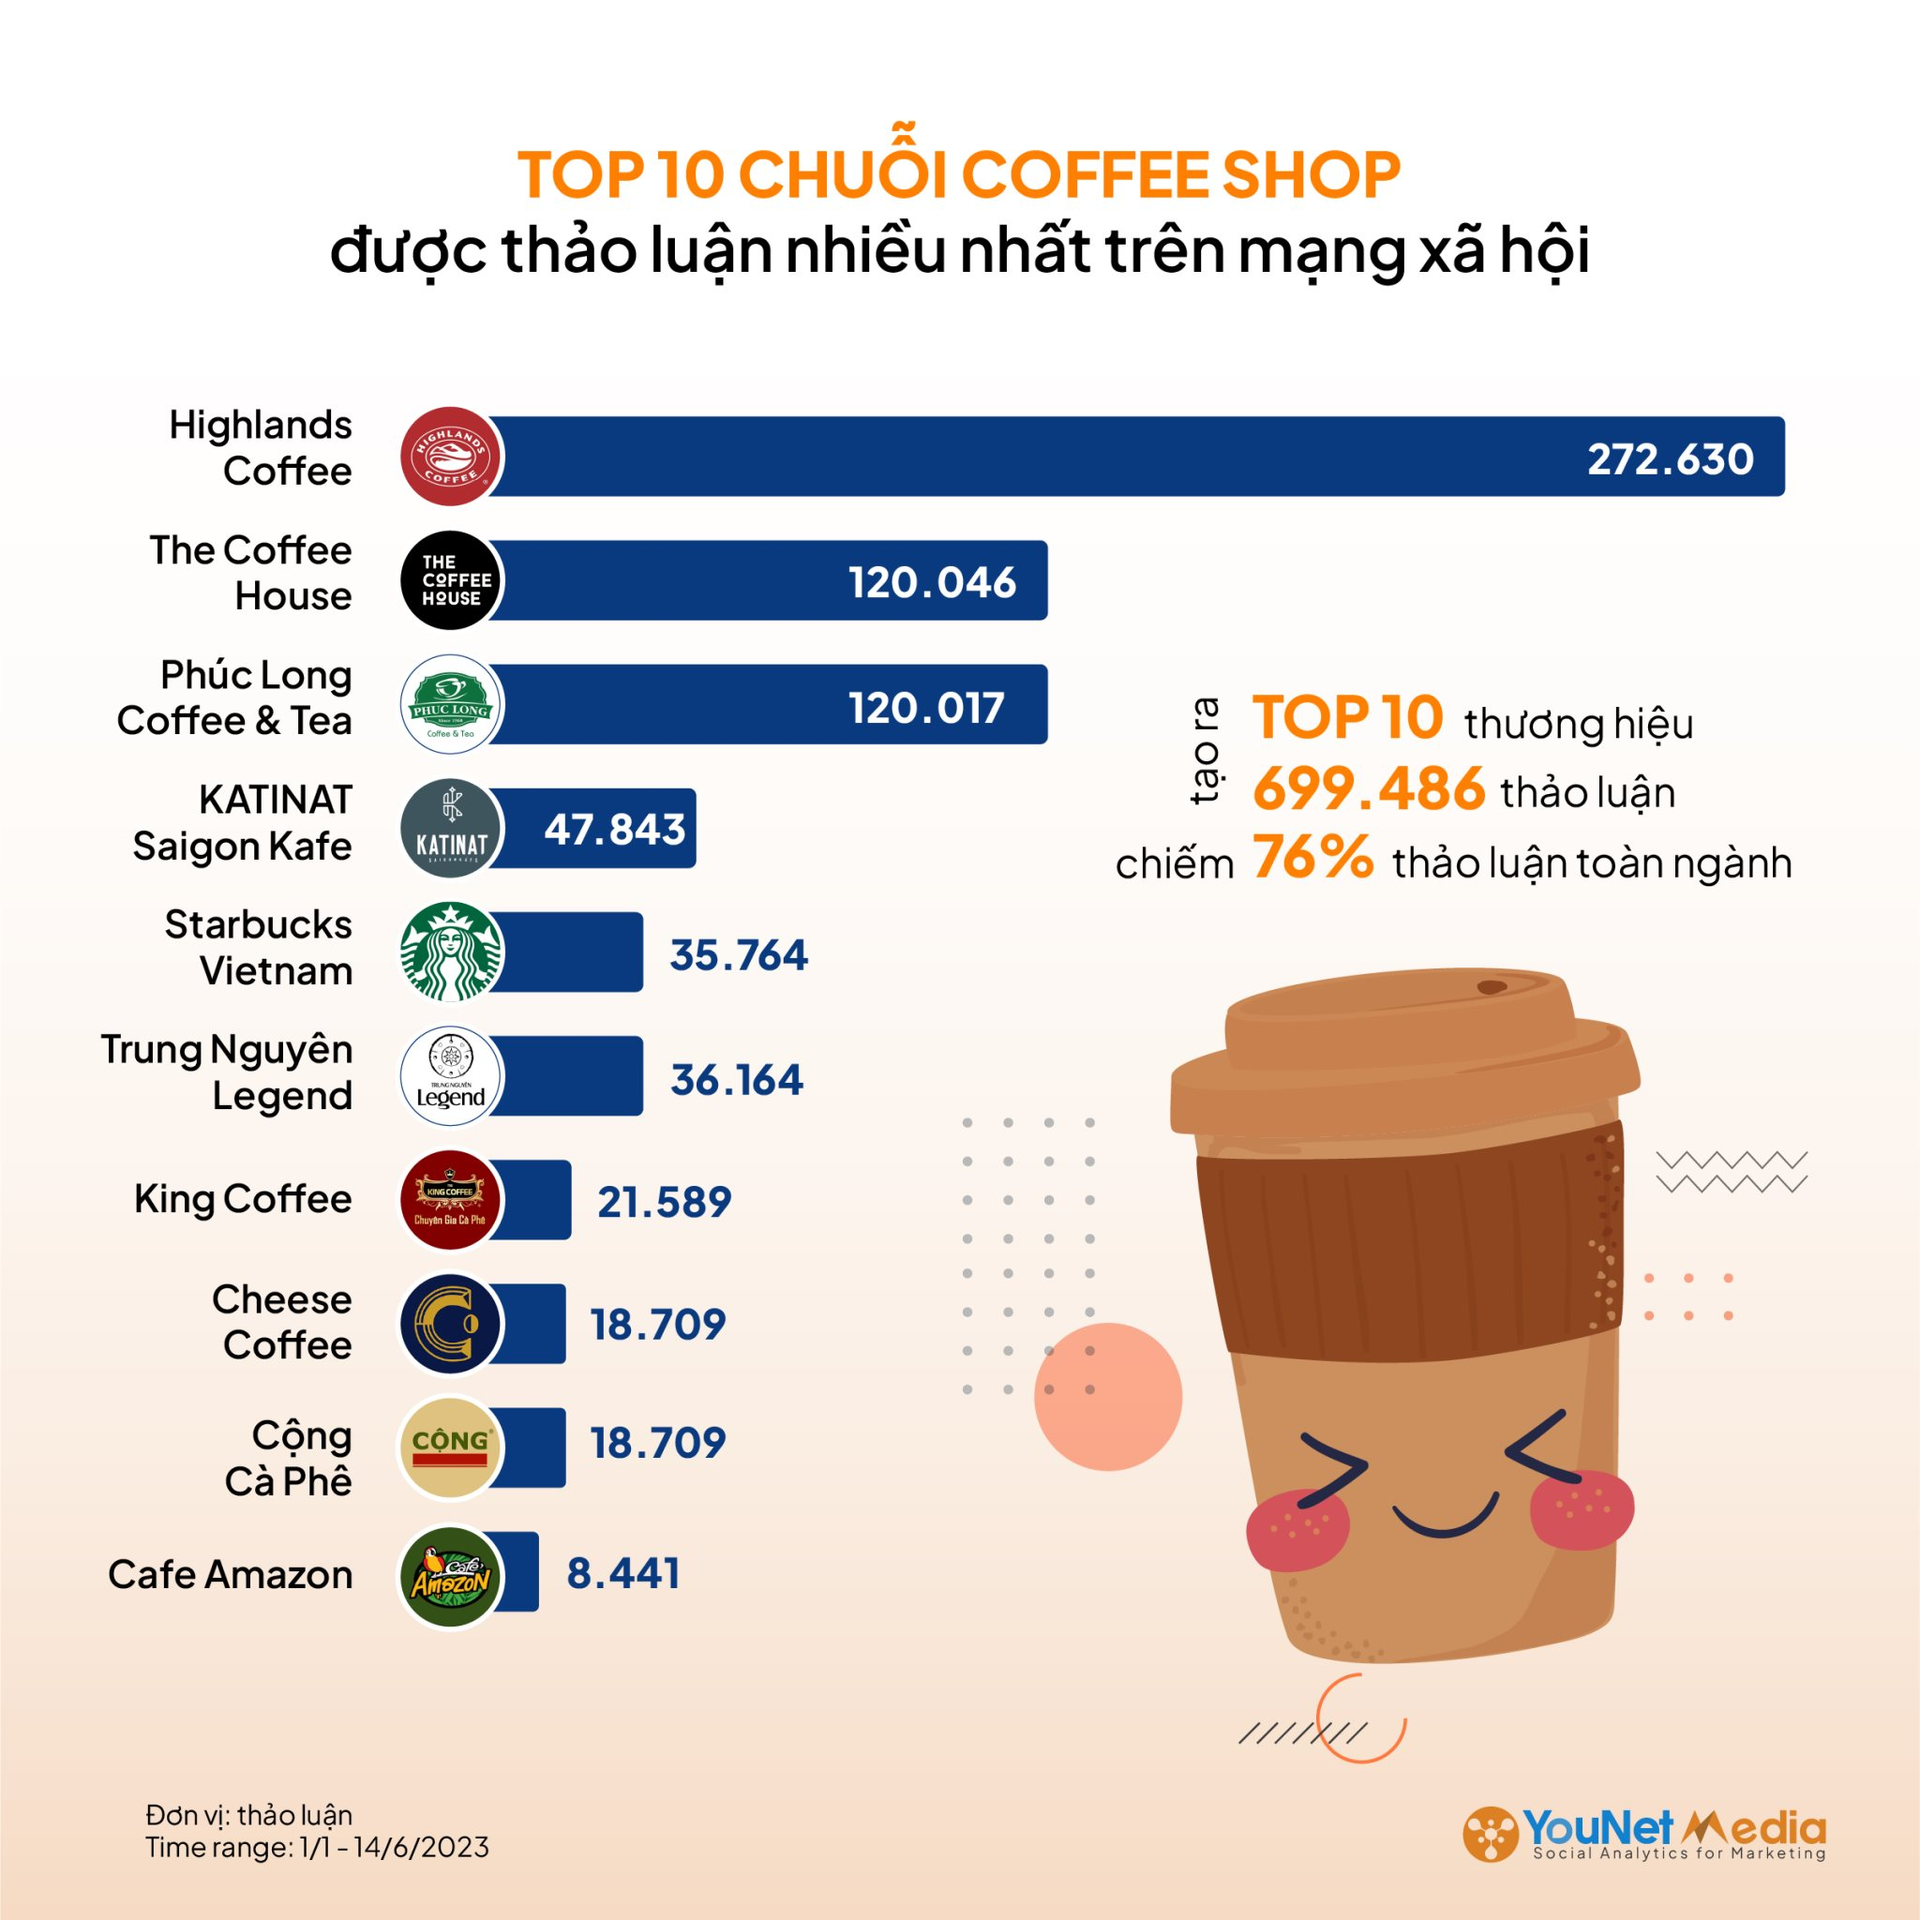 Katinat vượt Starbucks trong top 10 chuỗi cà phê được quan tâm nhất trên MXH Việt Nam, vị trí số 1 không có gì bất ngờ - Ảnh 1.